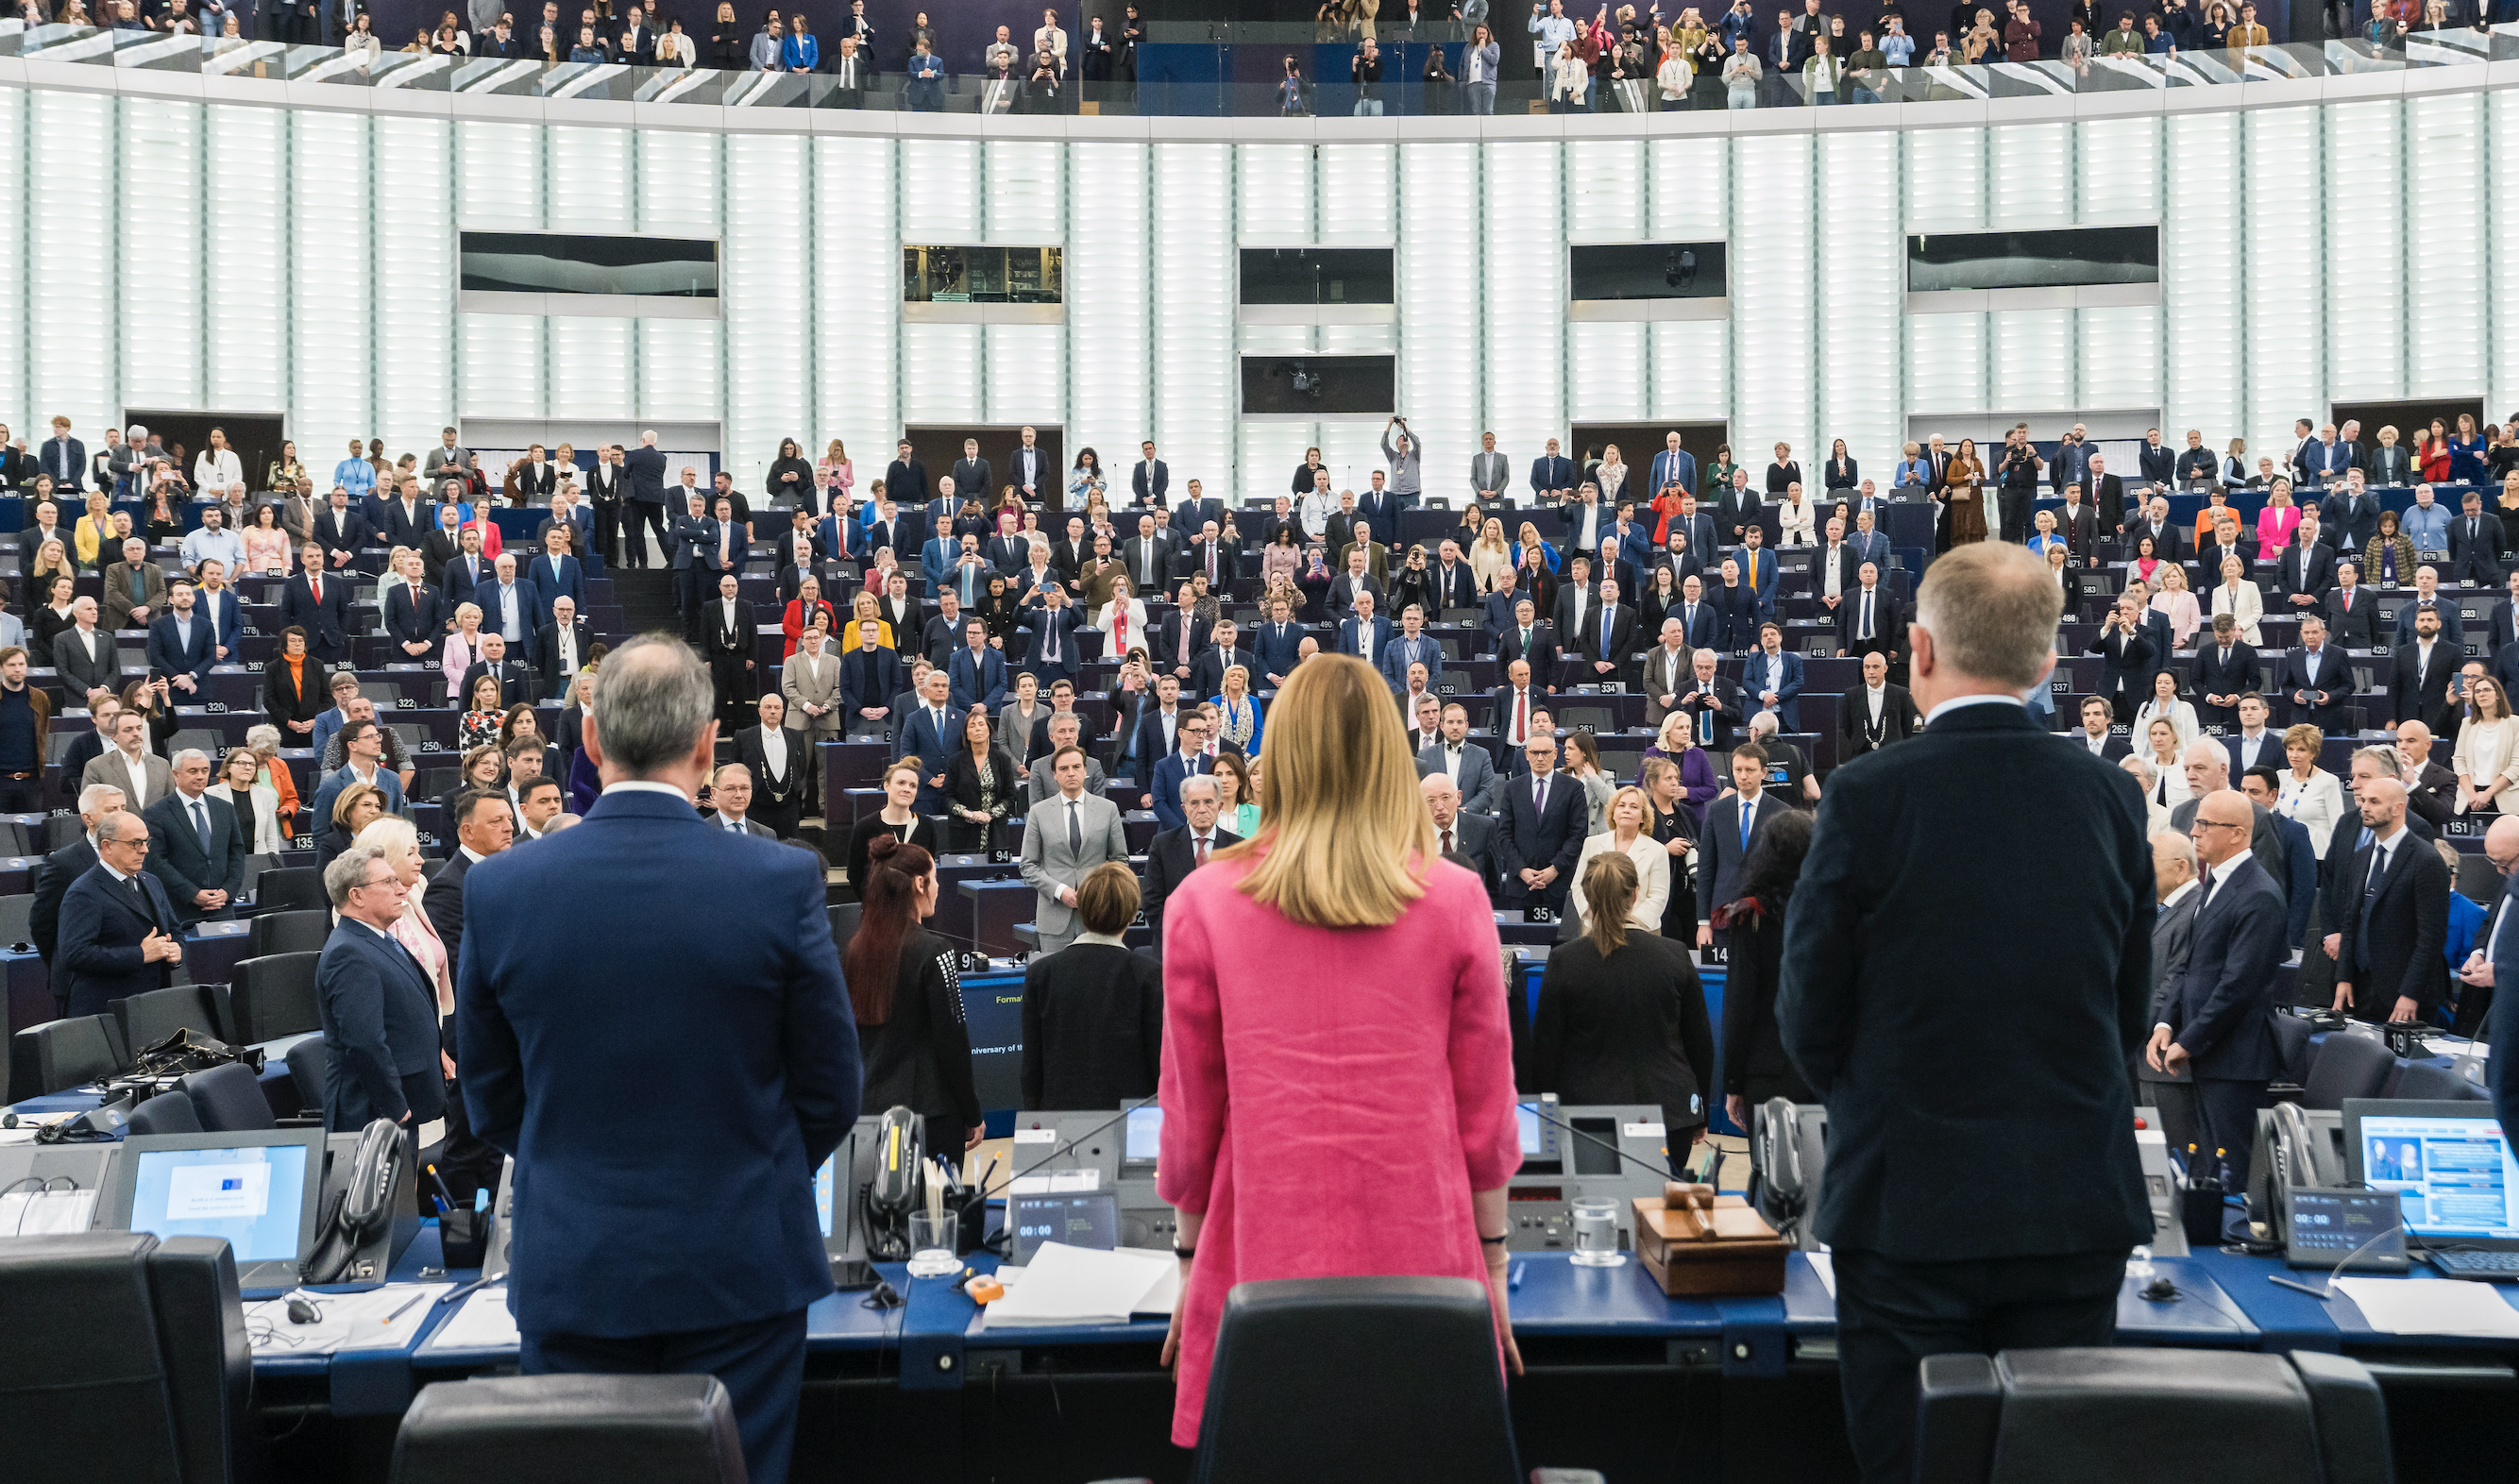 Přečtete si více ze článku Shrnutí: 6 hlavních bodů plenárního zasedání Evropského parlamentu